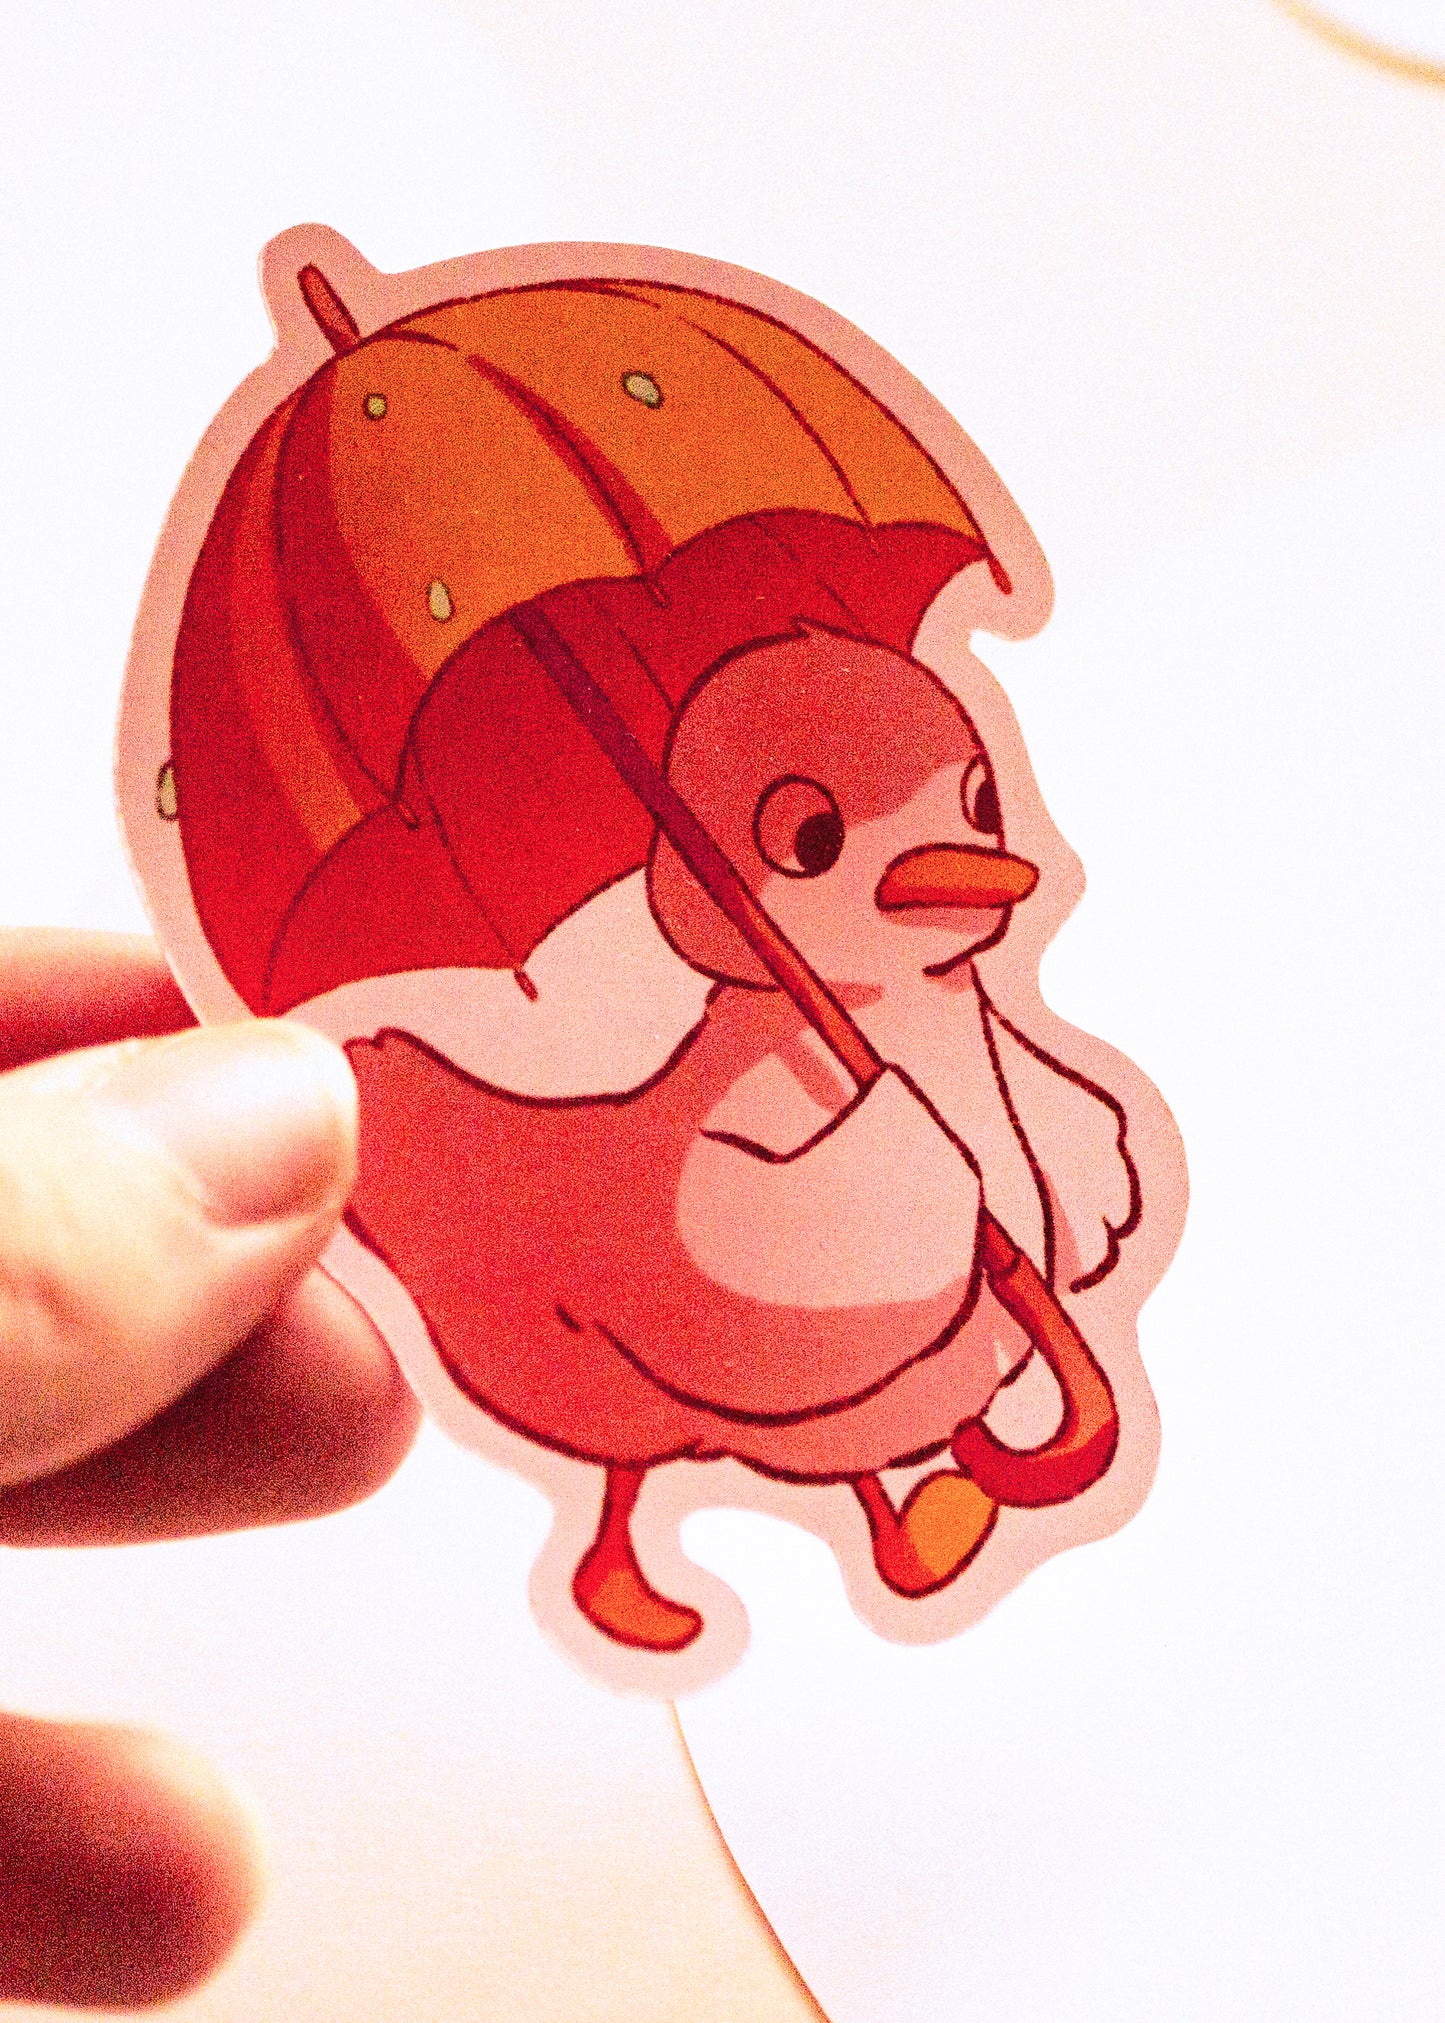 Sticker - Umbrella duck